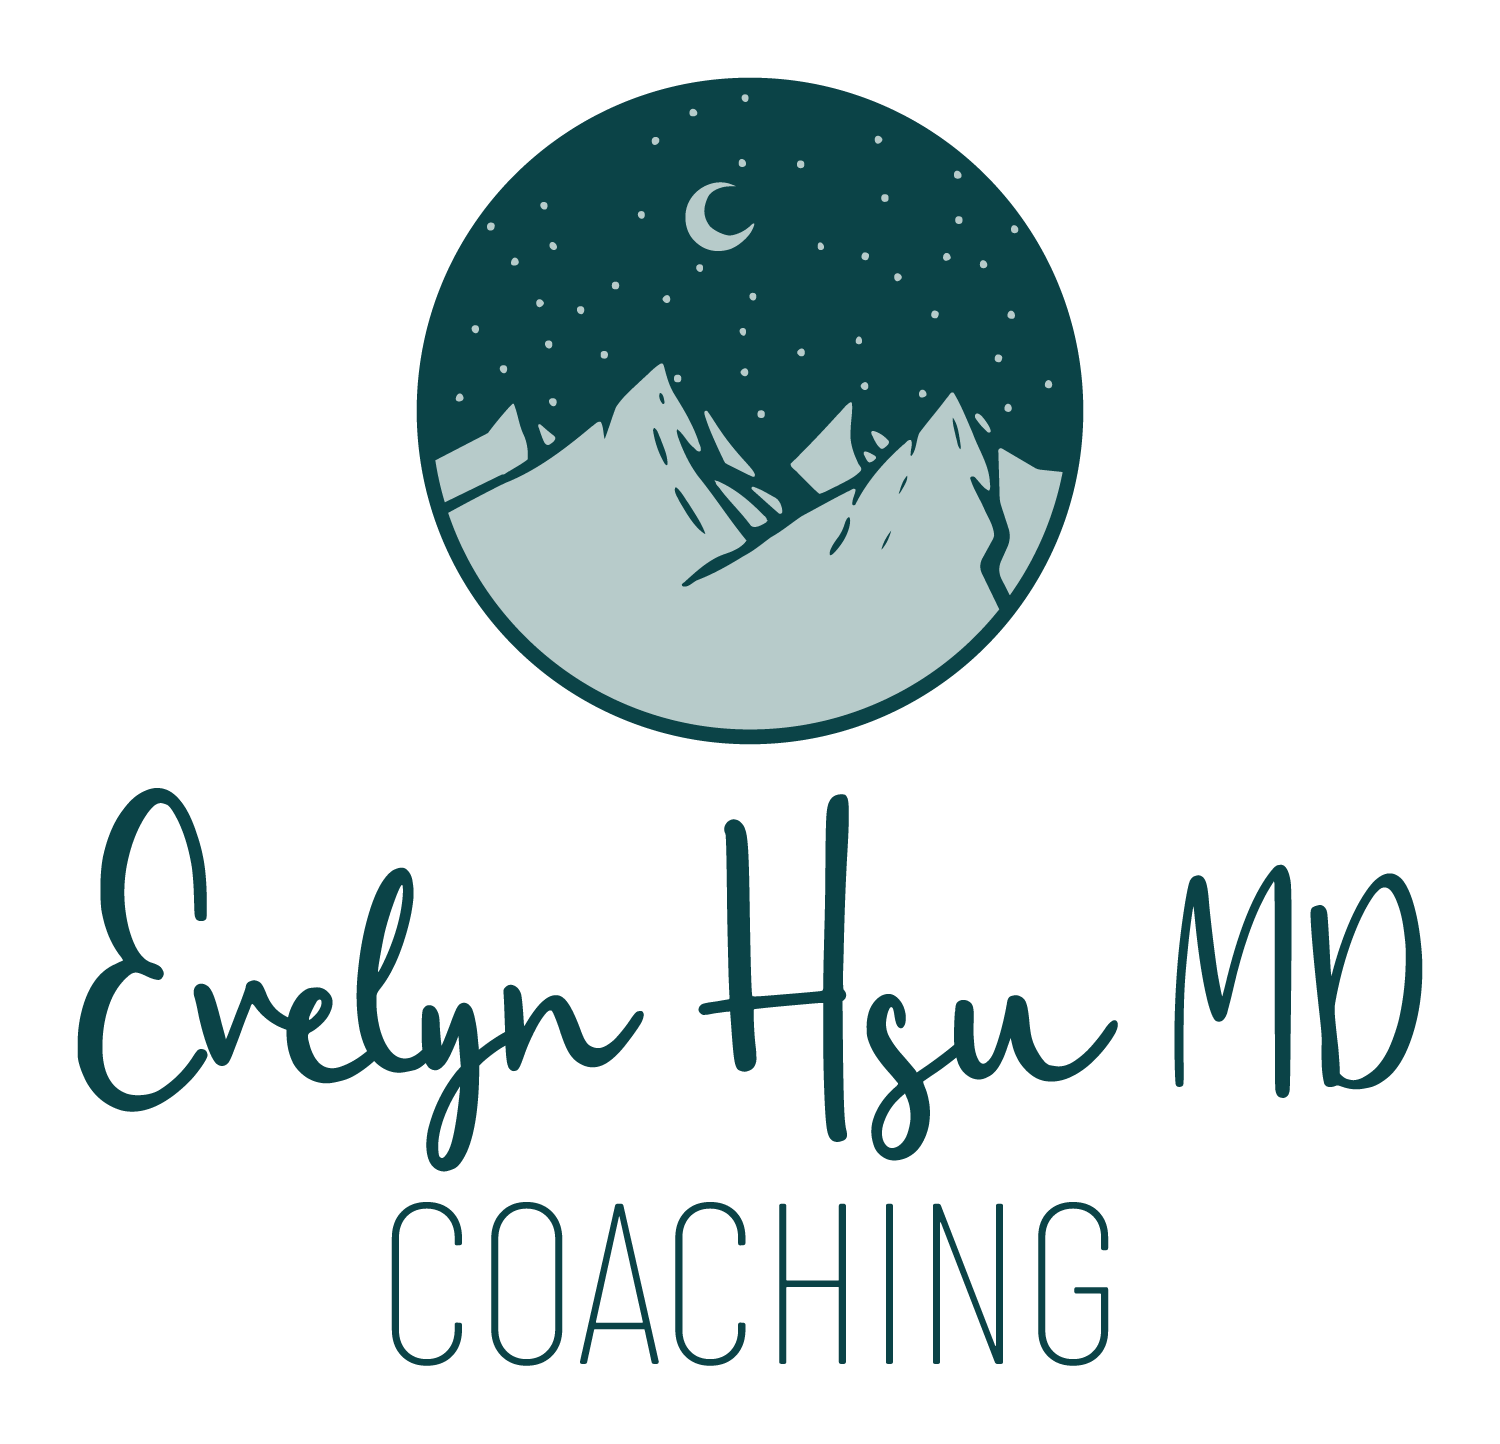 Evelyn Hsu MD Coaching 